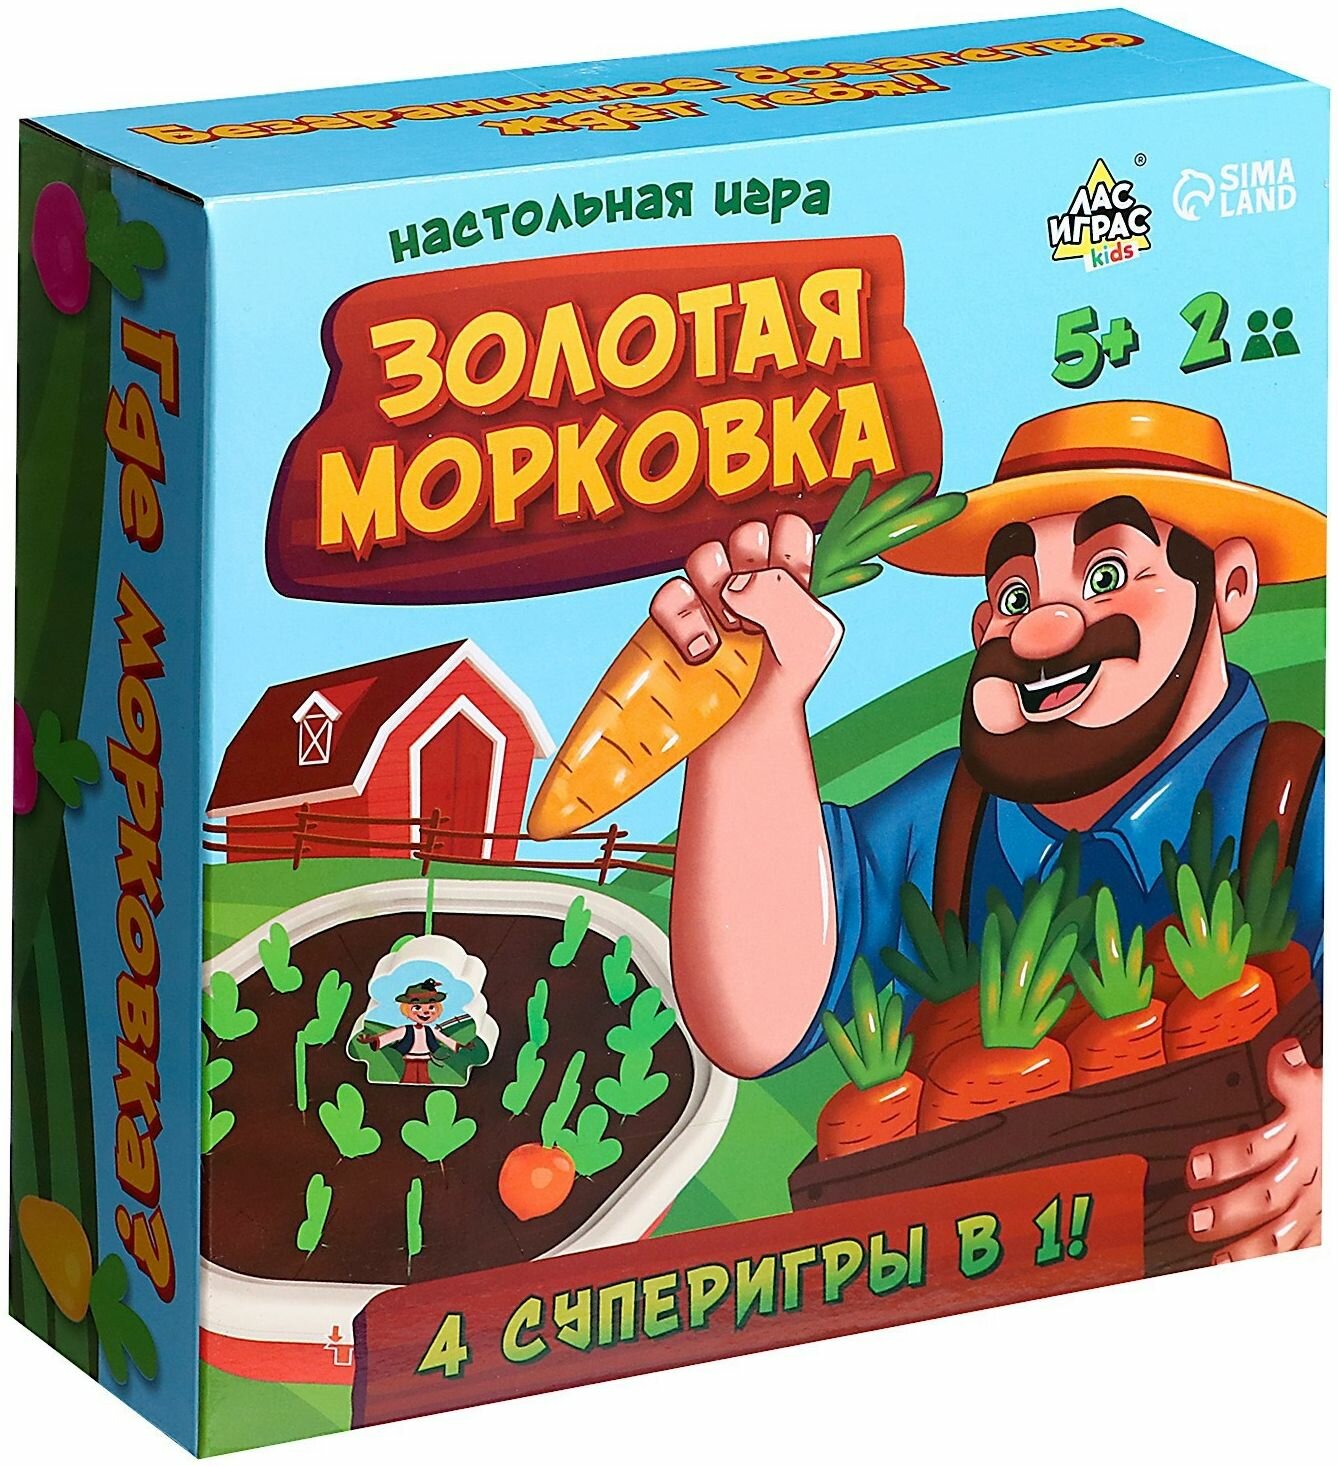 Развивающая настольная игра "Золотая морковка" на реакцию и внимание, в наборе игровое поле, 24 фигурки овощей, 1 фигурка фермера и 8 карточек